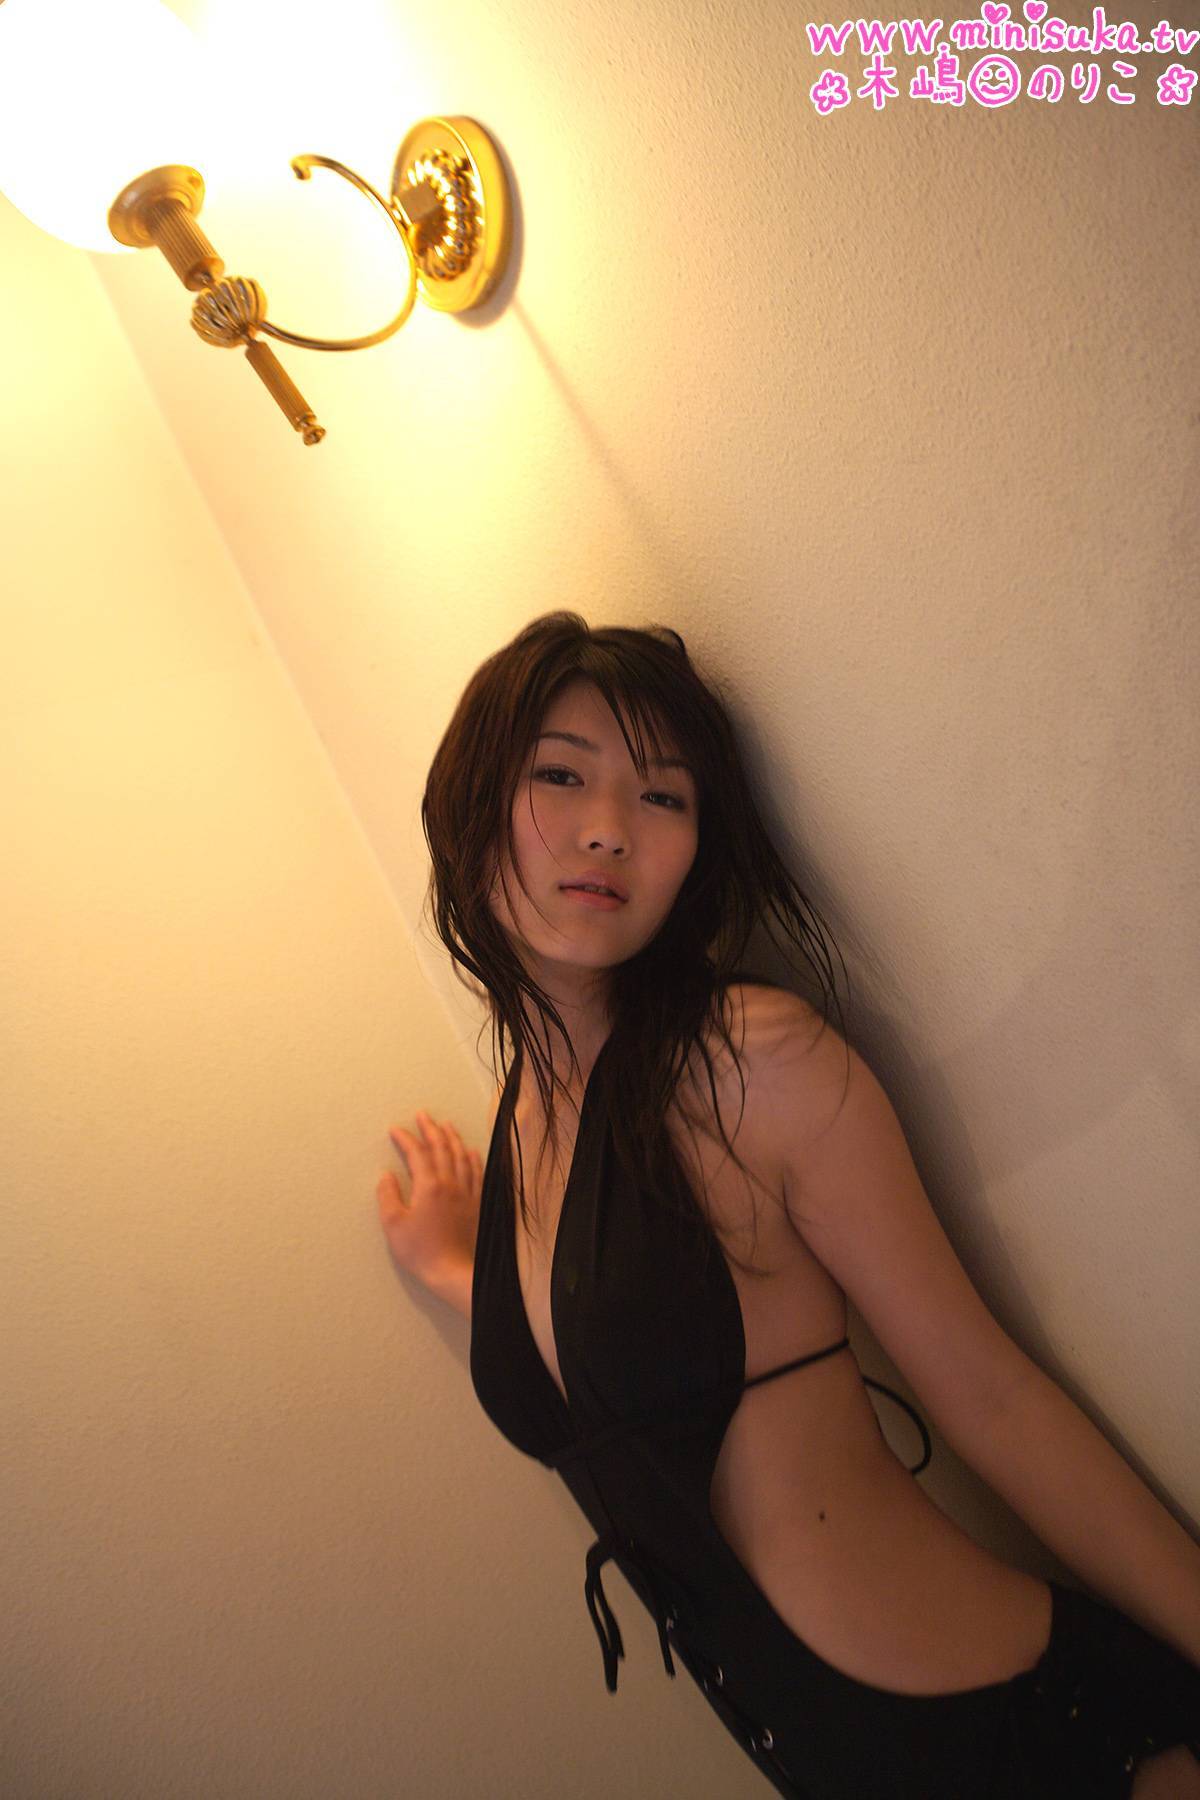 木嶋のりこ [Minisuka.tv] 现役女子高生 Noriko Kijima 日本美女图片